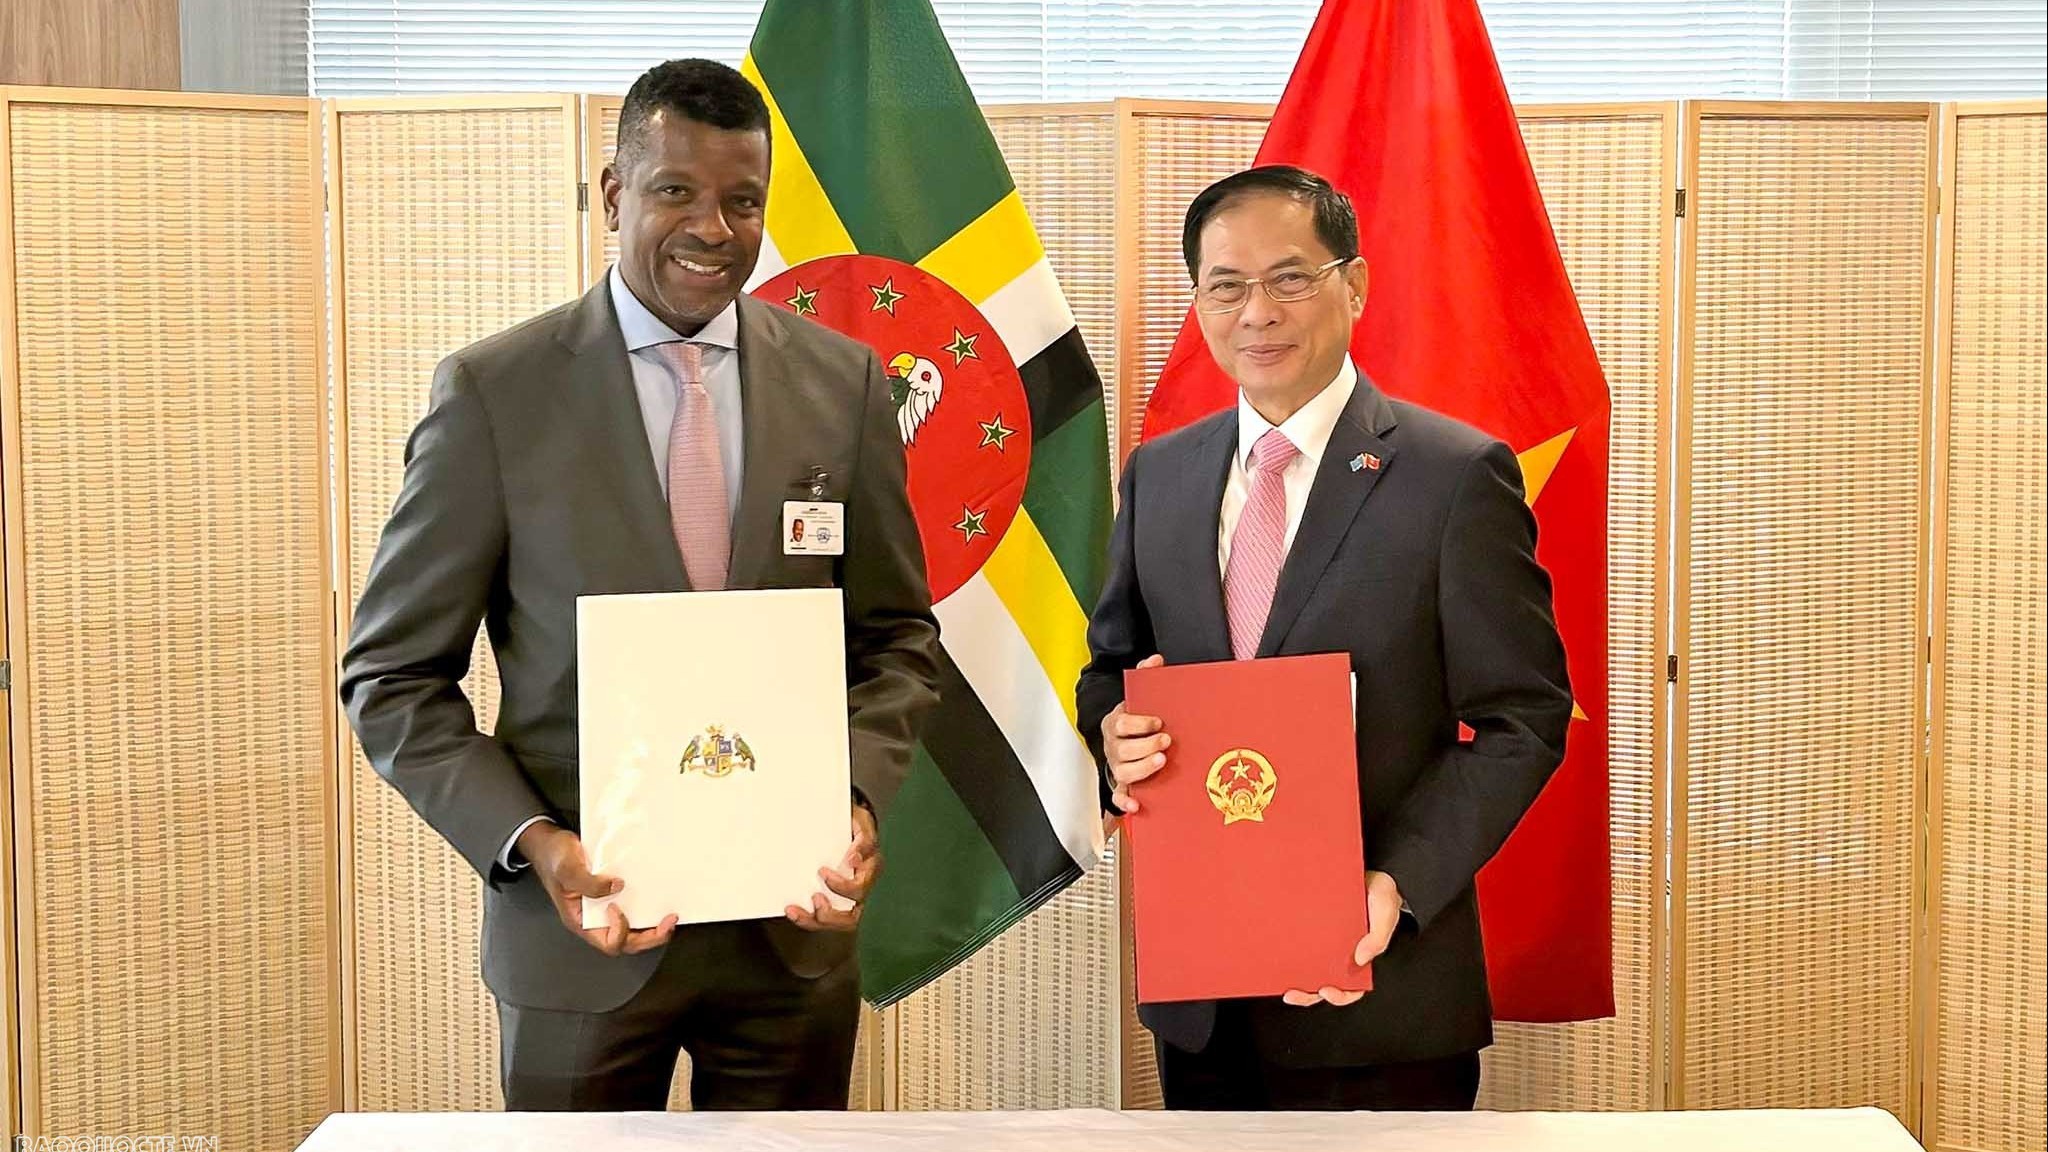 Việt Nam-Dominica ký Hiệp định miễn thị thực cho người mang hộ chiếu ngoại giao và công vụ